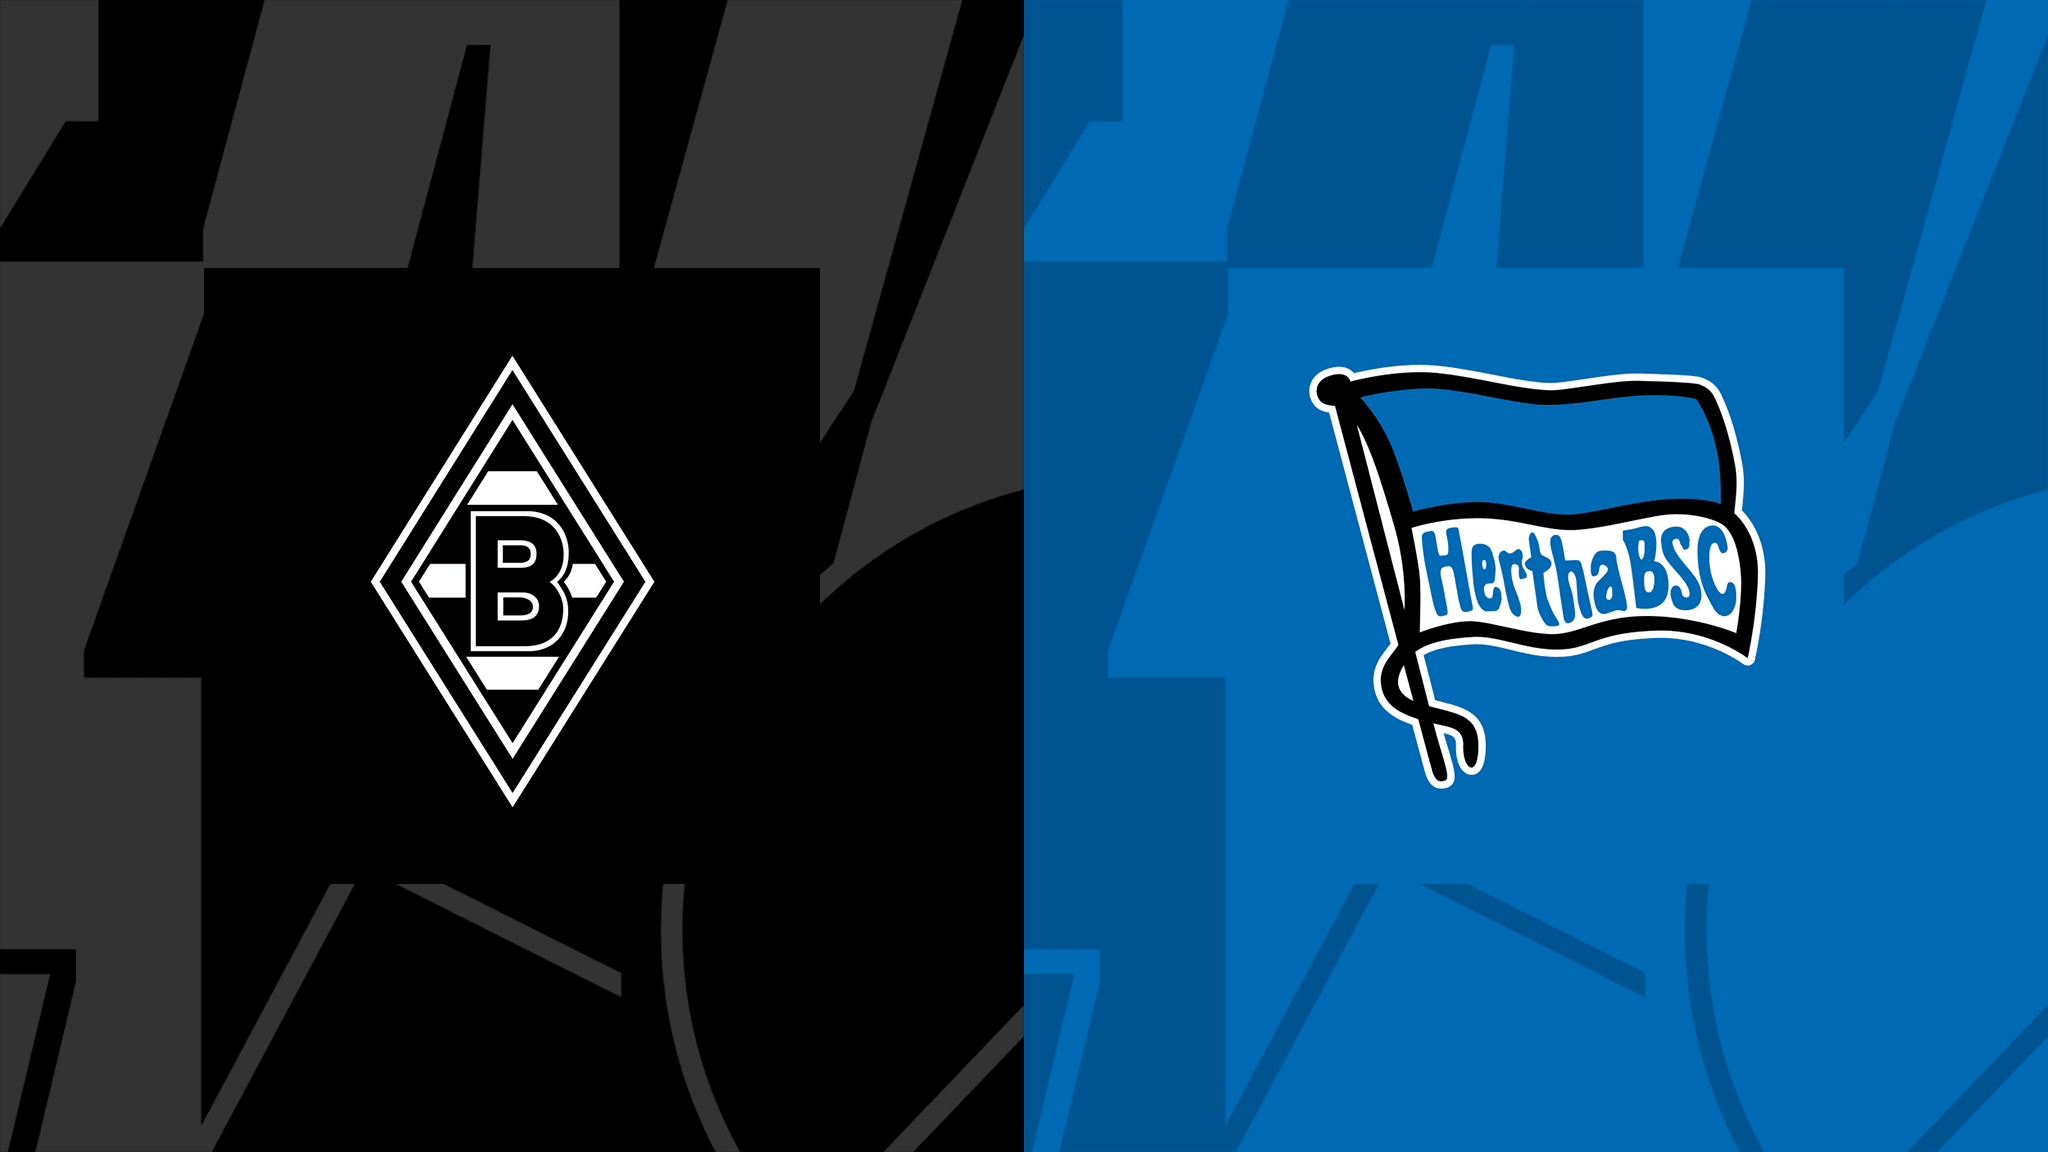 مشاهدة مباراة بوروسيا مونشنغلادباخ و هيرتا برلين بث مباشر 19/08/2022 Borussia M’gladbach vs Hertha BSC￼